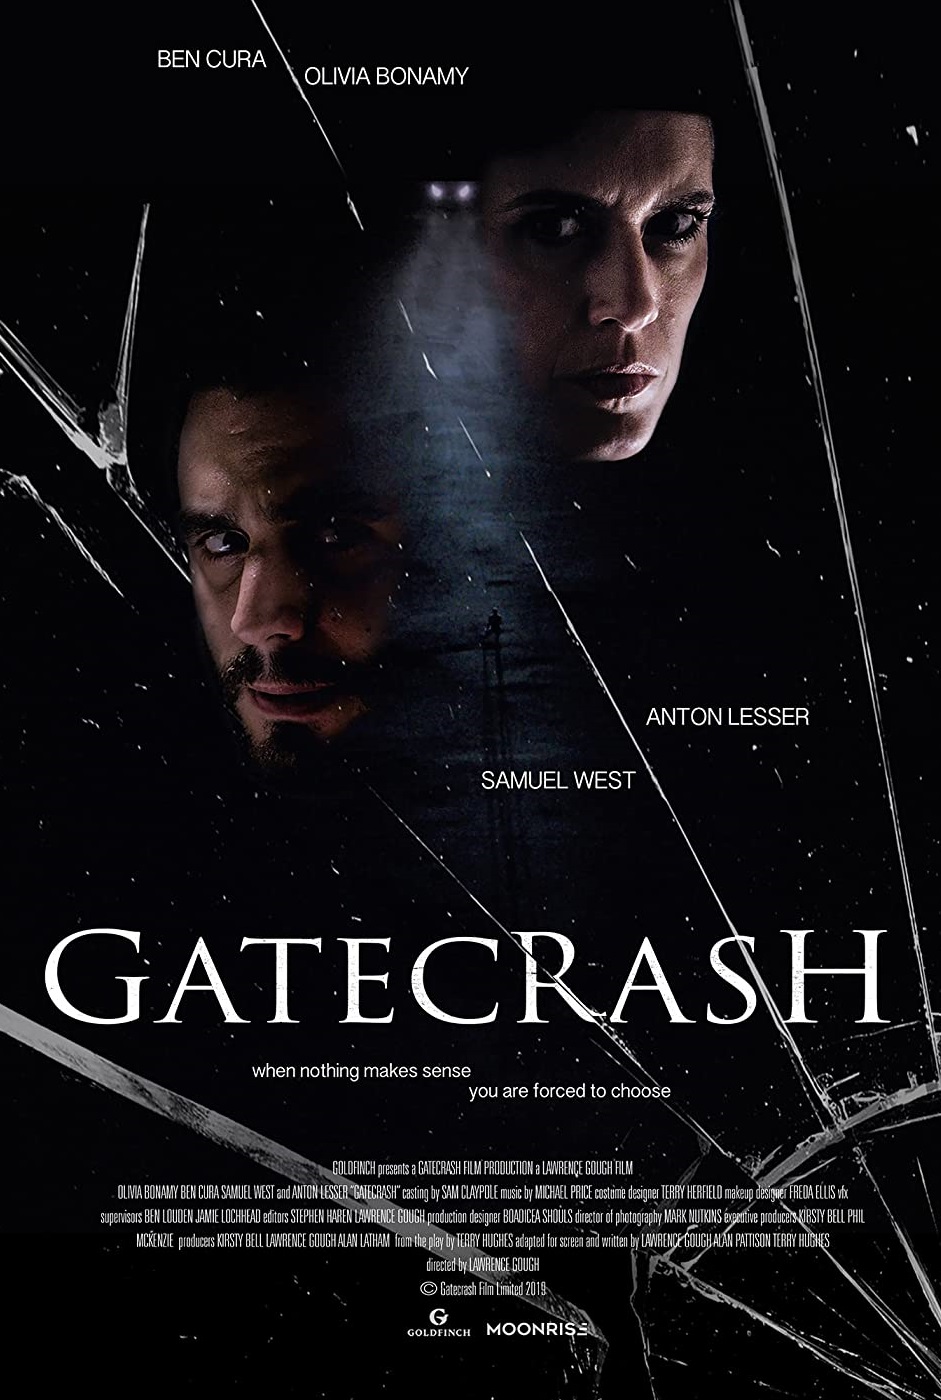 Gatecrash 2020 Tamil Dubbed Thriller Movie Online